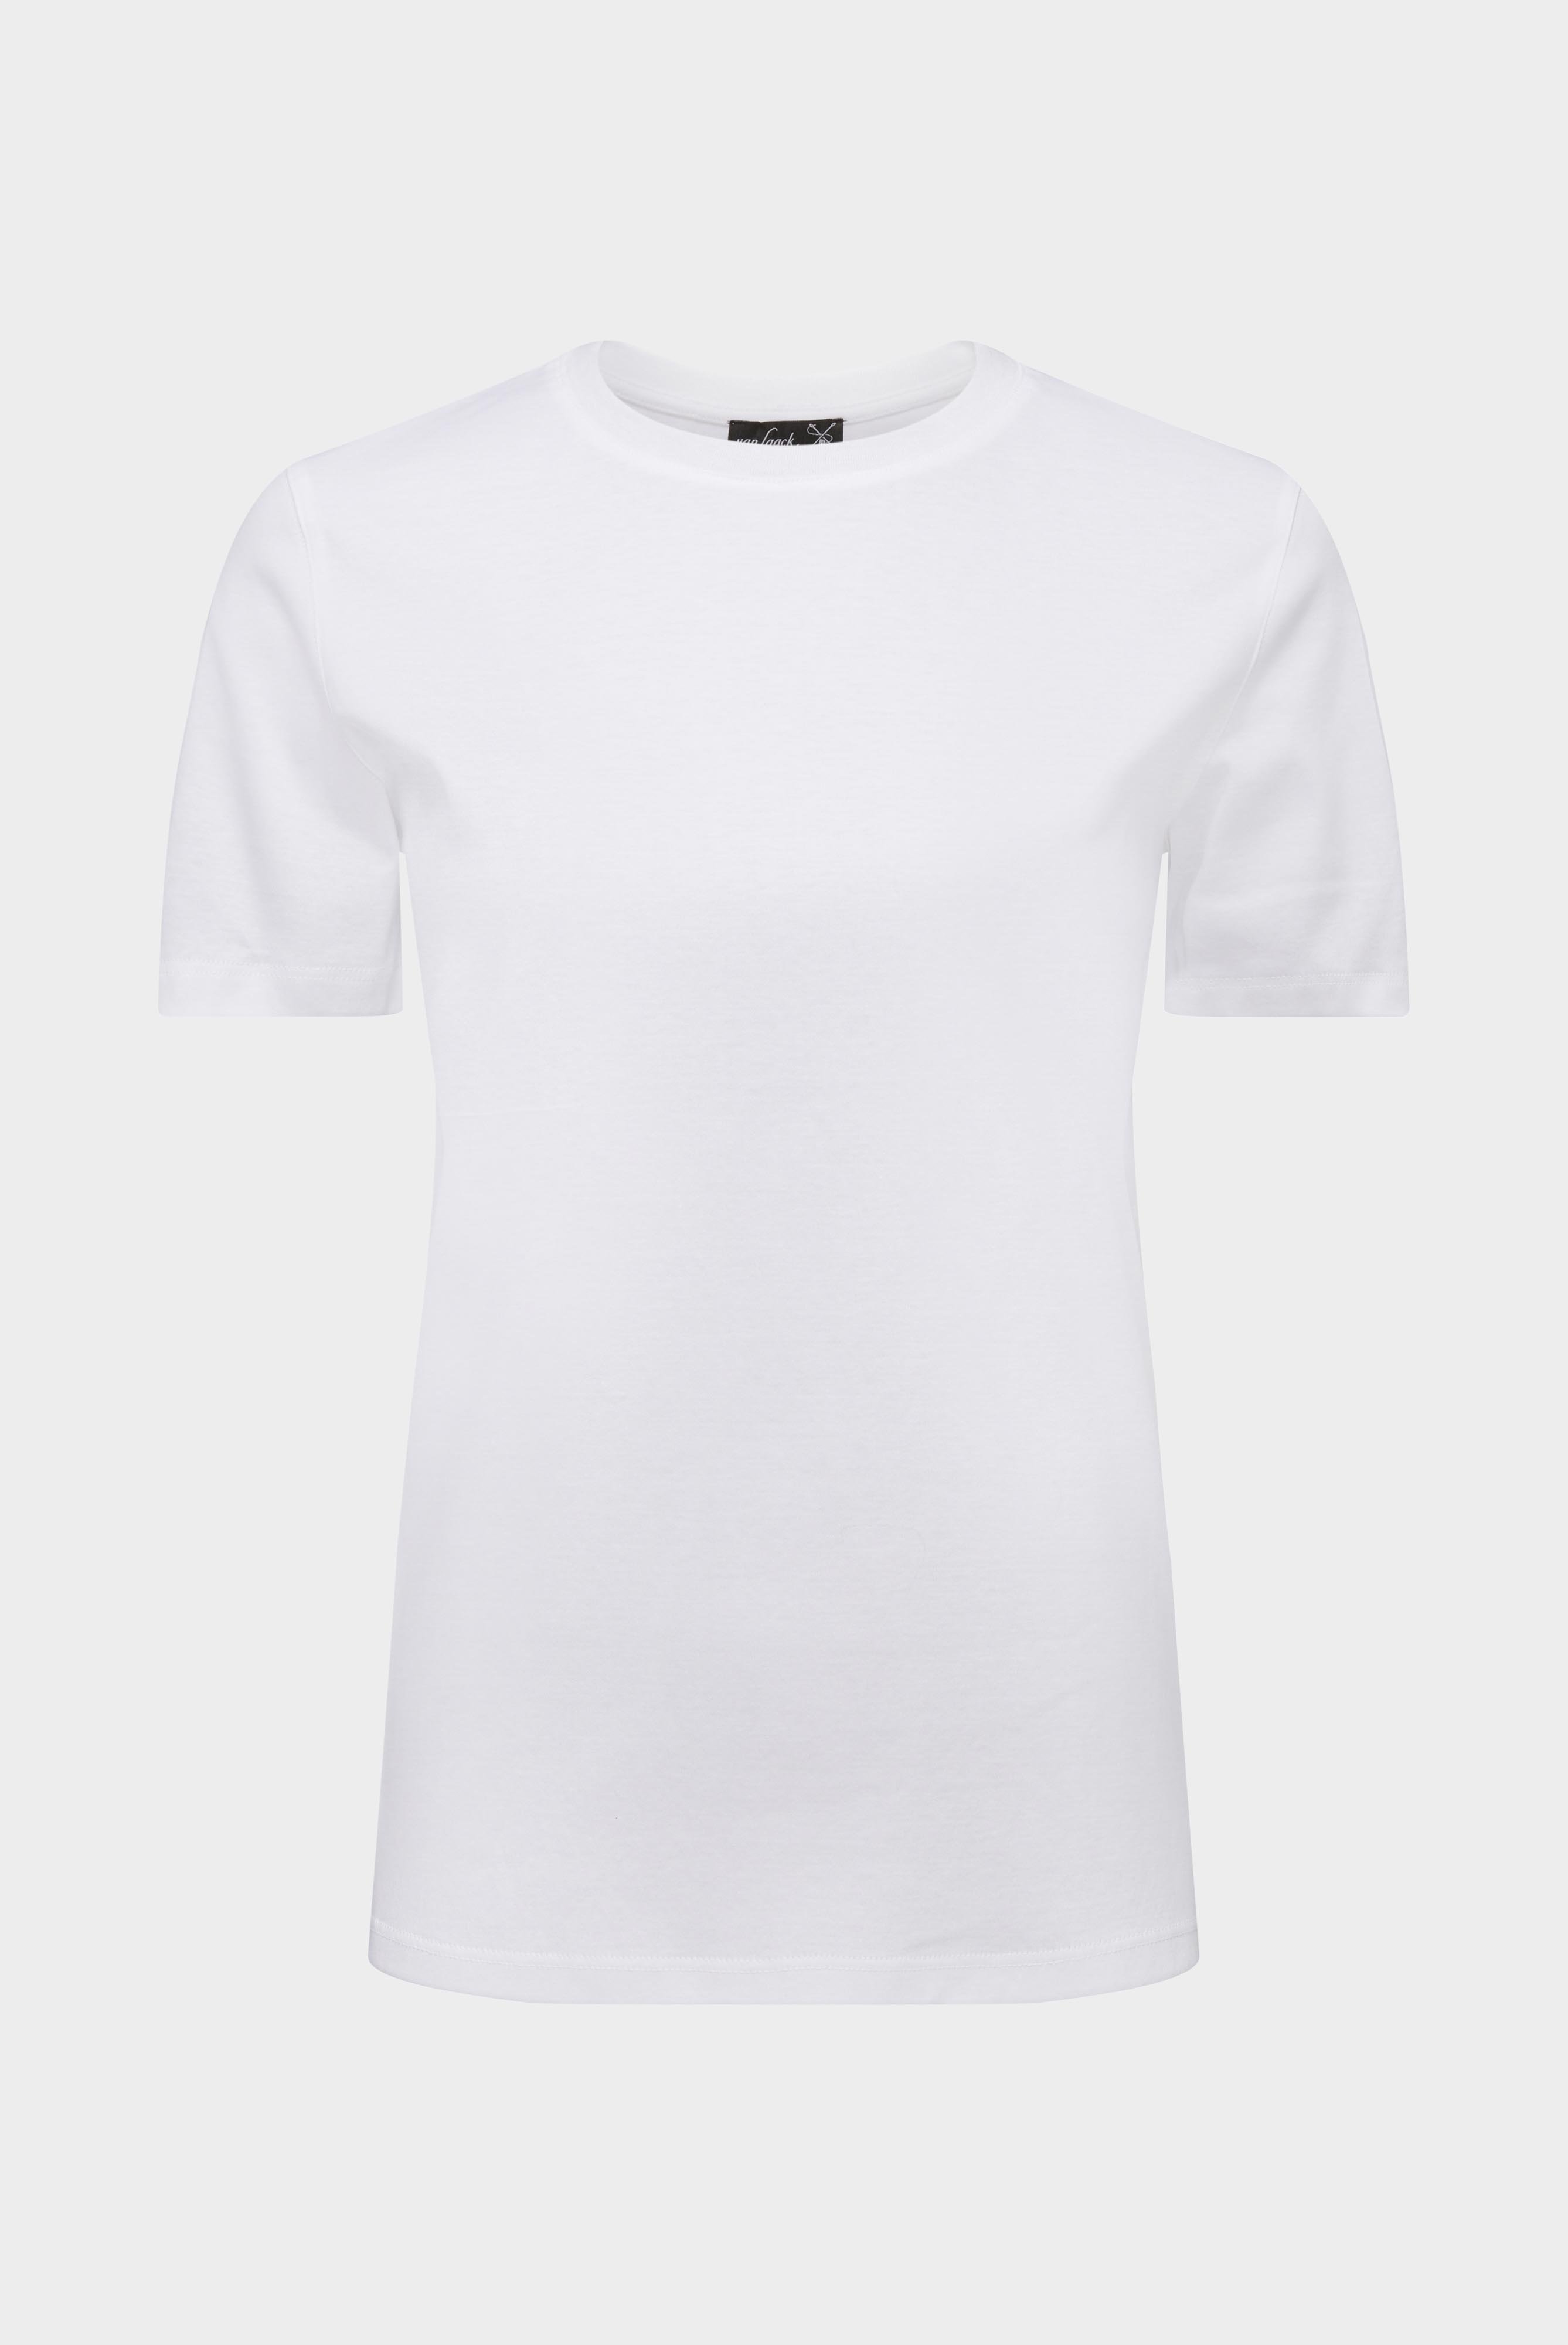 Tops & T-Shirts+Jersey T-Shirt+05.6384.18.180031.000.46